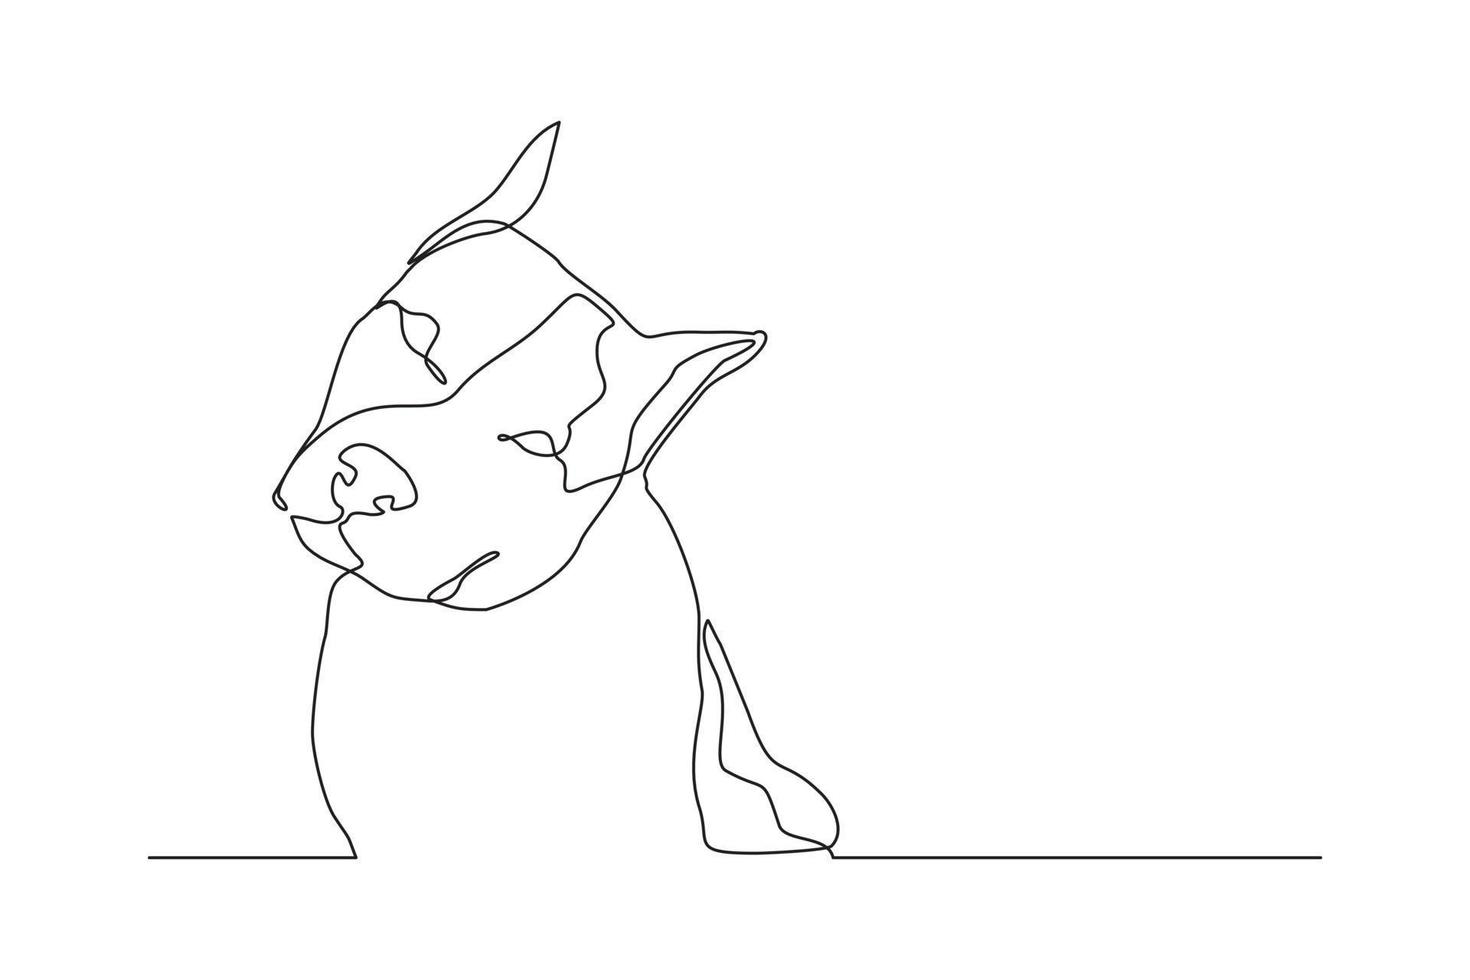 desenho de linha contínua de retrato de cachorro de estimação feliz. arte única de uma linha de cão de cabeça bonito. ilustração vetorial vetor